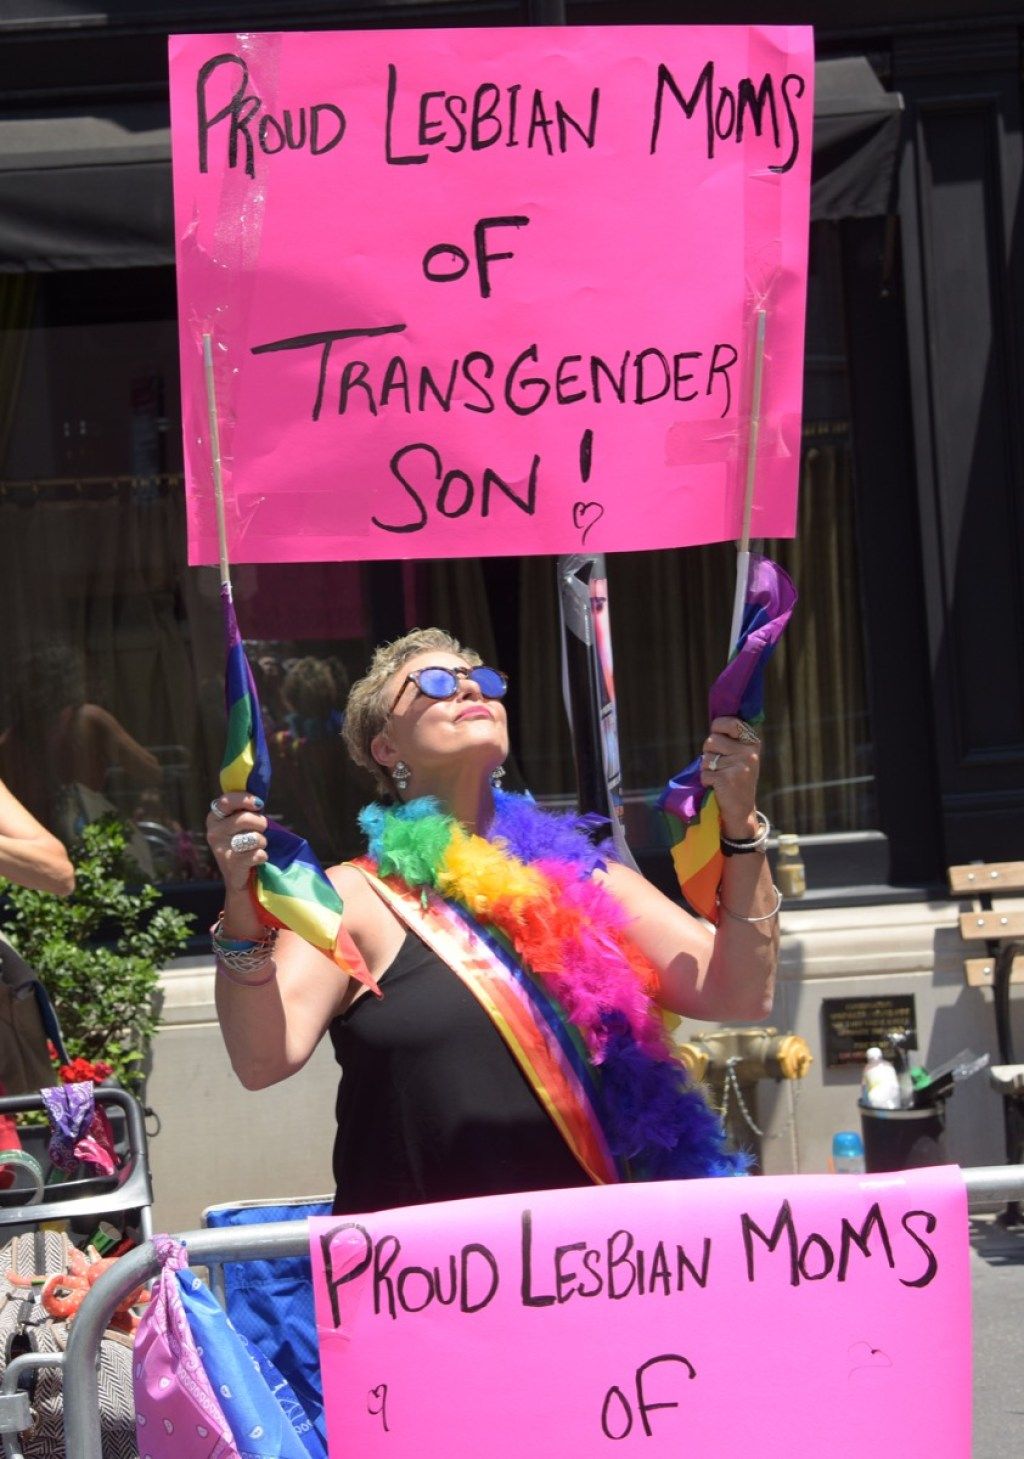 गर्व समारोह से नए यॉर्क शहर गौरव परेड तस्वीरों में ट्रांसजेंडर बच्चों के गर्व समलैंगिक माताओं